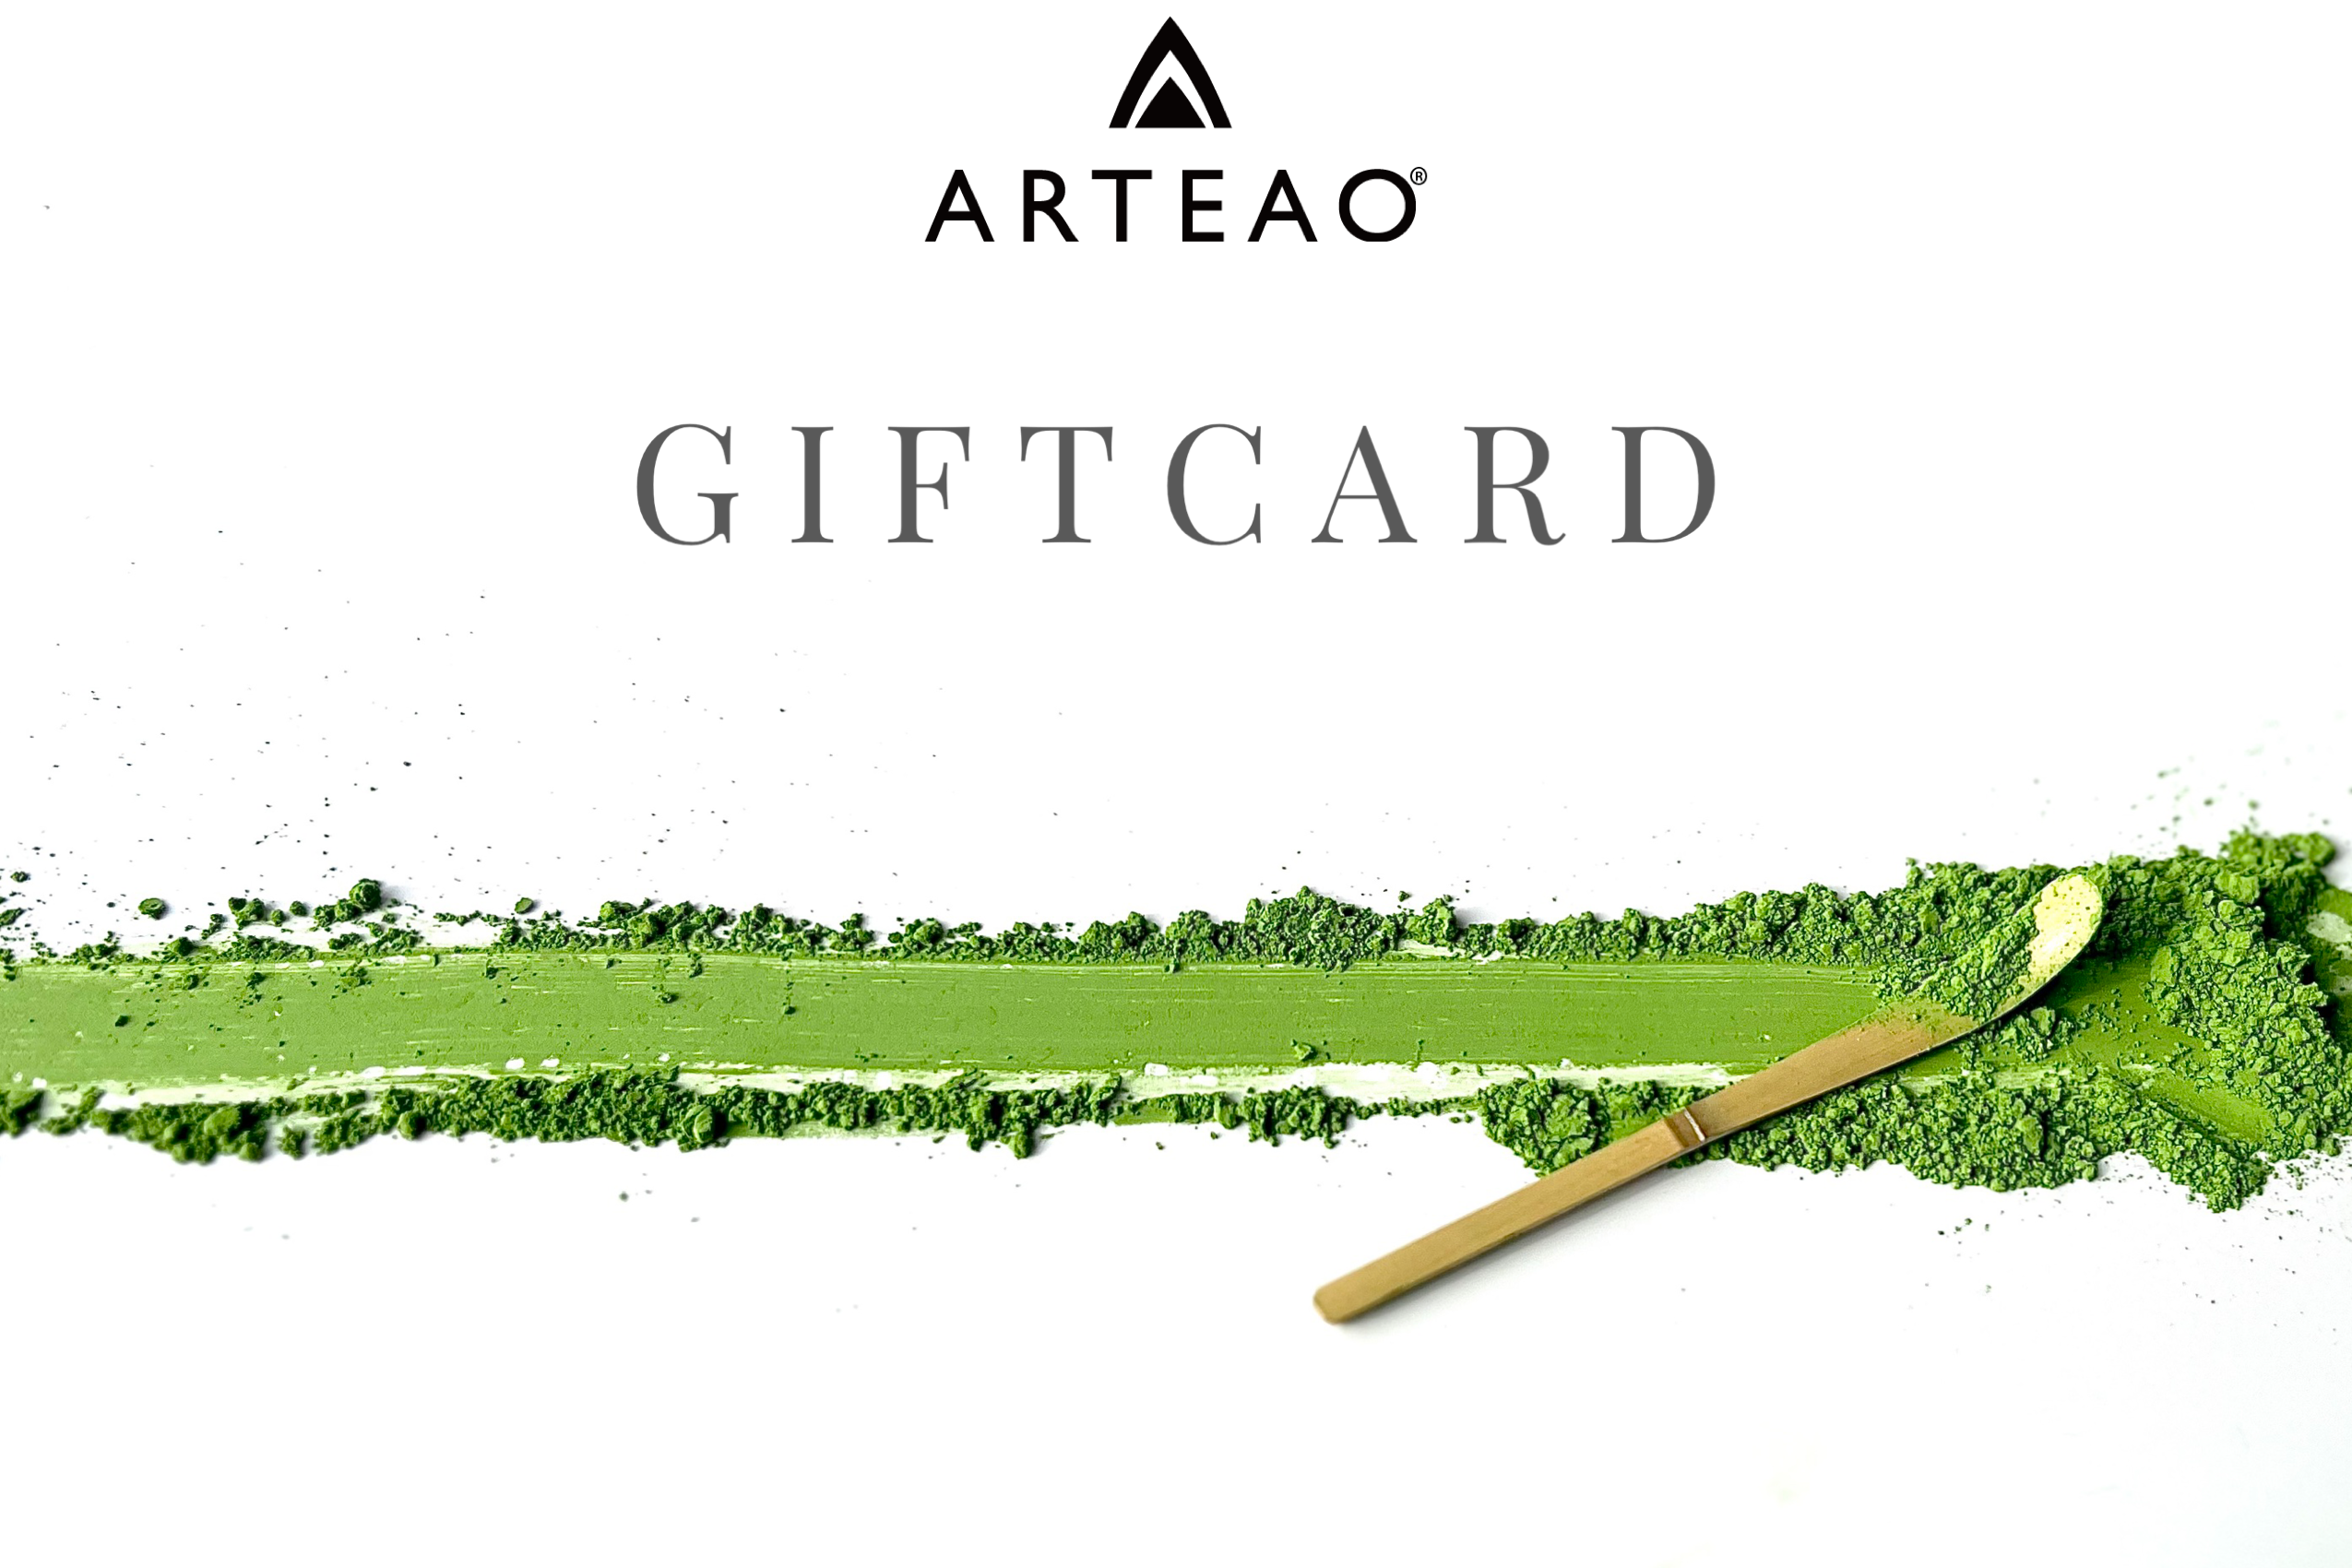 ARTEAO E-Gift Card